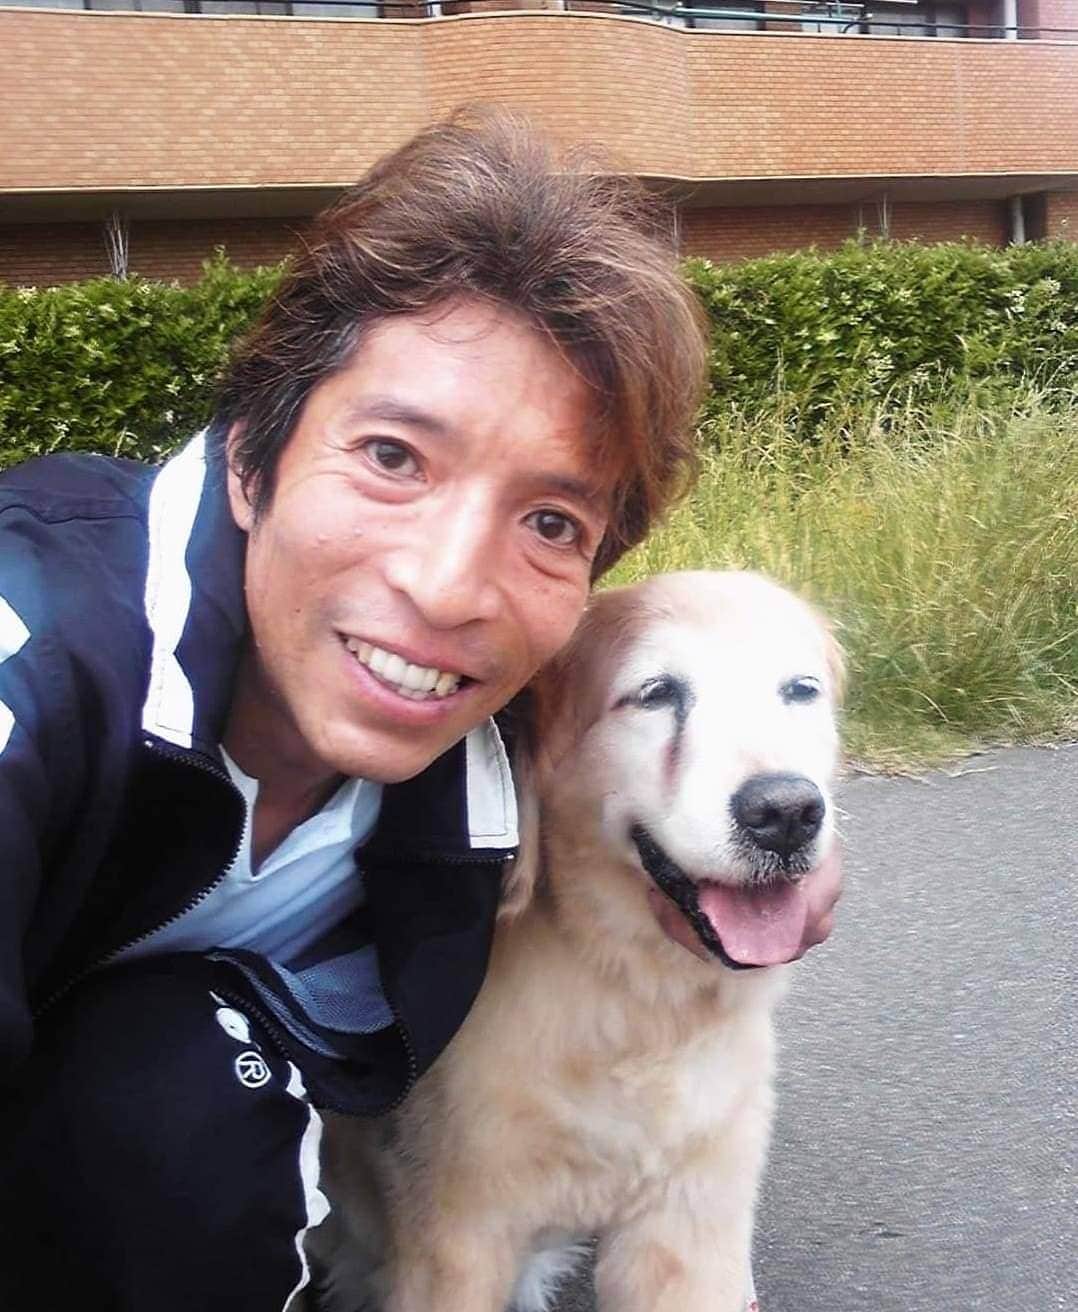 松野行秀さんのインスタグラム写真 - (松野行秀Instagram)「今日はキャンディの祥月命日です🙏 · · · キャンディは、2013年の今日6月20日、享年15才と9ヶ月で旅立ちました。 · · · 〈2013年6月20日の日記〉 · ～～〜～～～～～～～～～ · 今日は、皆さんに悲しいお知らせをしなければなりません。 · 愛犬キャンディが、今朝他界致しました。 · 享年15才と9ヶ月・・・人間の歳に換算して90歳でした。 · 幸いなことに、キャンディの最期をしっかりと看取ることが出来ました。 · 今日は、辛いのでこの辺でペンを置かせて頂きます。 · 永遠の眠りに就いたキャンディ・・・声を掛ければ、今にも起きてきそうな安らかな寝顔です。 · 〜～～～～～～～～～～～ · · 私とキャンディは、キャンディが生後3ヶ月の時に都内のペットショップで出逢いました。 · · 抱っこしたとたんに、無心に私の顔をペロペロ舐めてきた人懐こいキャンディに即座に心を奪われました。 · · 都内でキャンディと一緒に暮らし始めた当時、私は離婚騒動の渦中という試練の中に身を置いておりました。 · · しかし、どんなに辛いことや嫌なことがあっても、家に戻ってキャンディのあどけない顔を見ているうちに、私はいつも心が癒されました。 · · 騒動の後、私とキャンディは出身地である福島に移住することになりました。 · · 福島に移ってからもキャンディには色々と心配を掛けっぱなしでしたが、キャンディはいつも傍らで優しく私を見守っていてくれました。 · · 出逢った時はあどけない赤ちゃんだったキャンディが、いつの間にか私の年齢を飛び越えて、そして最期は私より早く逝ってしまいました。 · · · キャンディを喪ったばかりの頃は、ワンちゃんの寿命の短さを恨めしく思ったこともありましたが、でも、お陰様で今はキャンディを失った淋しさよりも、キャンディと共に過ごせたことに対する感謝や喜び、そして、キャンディとの楽しかった思い出と共に毎日を過ごすことが出来るようになりました。 · · · キャンディの遺骨は、納骨せずに、今も自室の祭壇で手厚く供養させて頂いております。 · · · 『願以此功徳　普及於一切　我等與衆生　皆共成仏道』 · 覚念行秀  合掌 · · · (ＪＫＣ発行の国際公認血統証明書より) 〈犬種〉 ・ゴールデンレトリバー 〈登録番号〉 ・RG-46839/97 〈性別〉 ・メス 〈毛色〉 ・ゴールデン 〈繁殖者〉 ・TETSUYA HIRONAKA(TOYOHASHICITY) 〈譲渡年月日〉 ・1997年11月1日 〈所有者〉 ・YUKIHIDE MATSUNO 〈登録日〉 ・1997年12月8日 〈生年月日〉 ・1997年9月3日 〈出産頭数〉 ・オス4 ・メス3 〈父〉 ・1992年2月23日生まれ（毛色ゴールデン) ※父方は３代続きのチャンピオン(AM) 〈母〉 ・1993年12月15日生まれ（毛色ゴールデン) 〈犬名〉 ・シグナス オブ トヨハシ ヒロナカ ＪＰ（その後キャンディ オブ フクシマ マツノＪＰ)」6月20日 19時27分 - g.matsuno